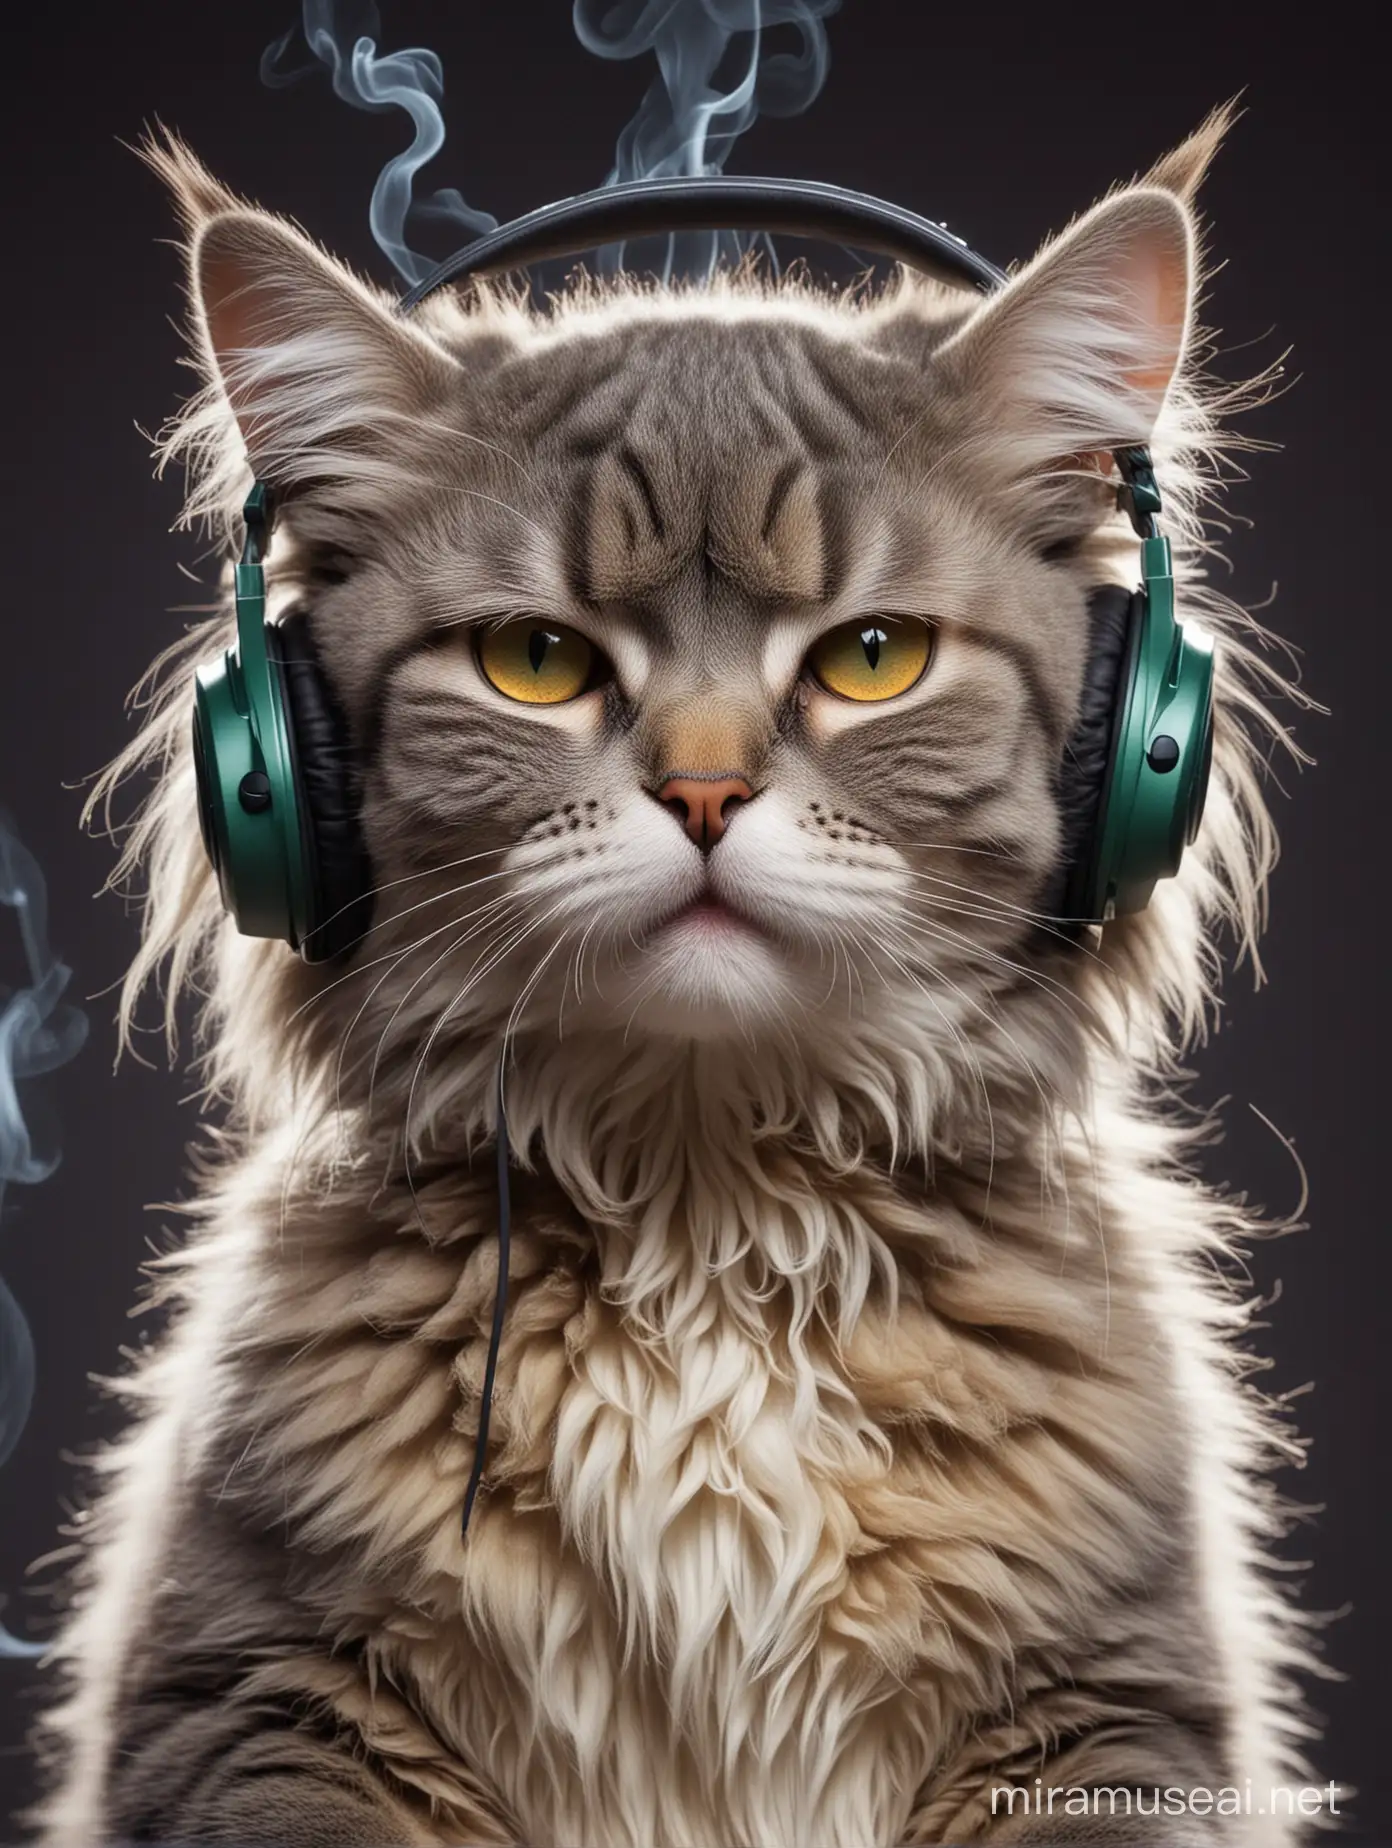 fuzzy cat wearing headphones, smoking marijuana, and making music